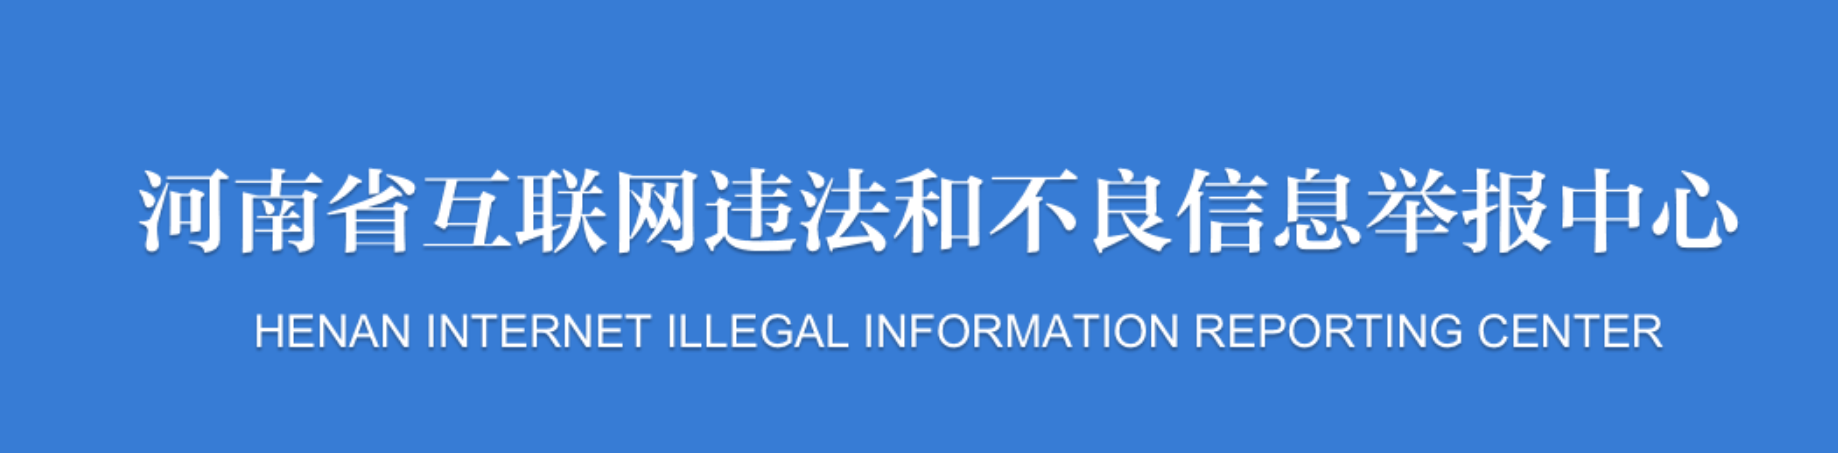 许昌市违法和不良信息举报入口